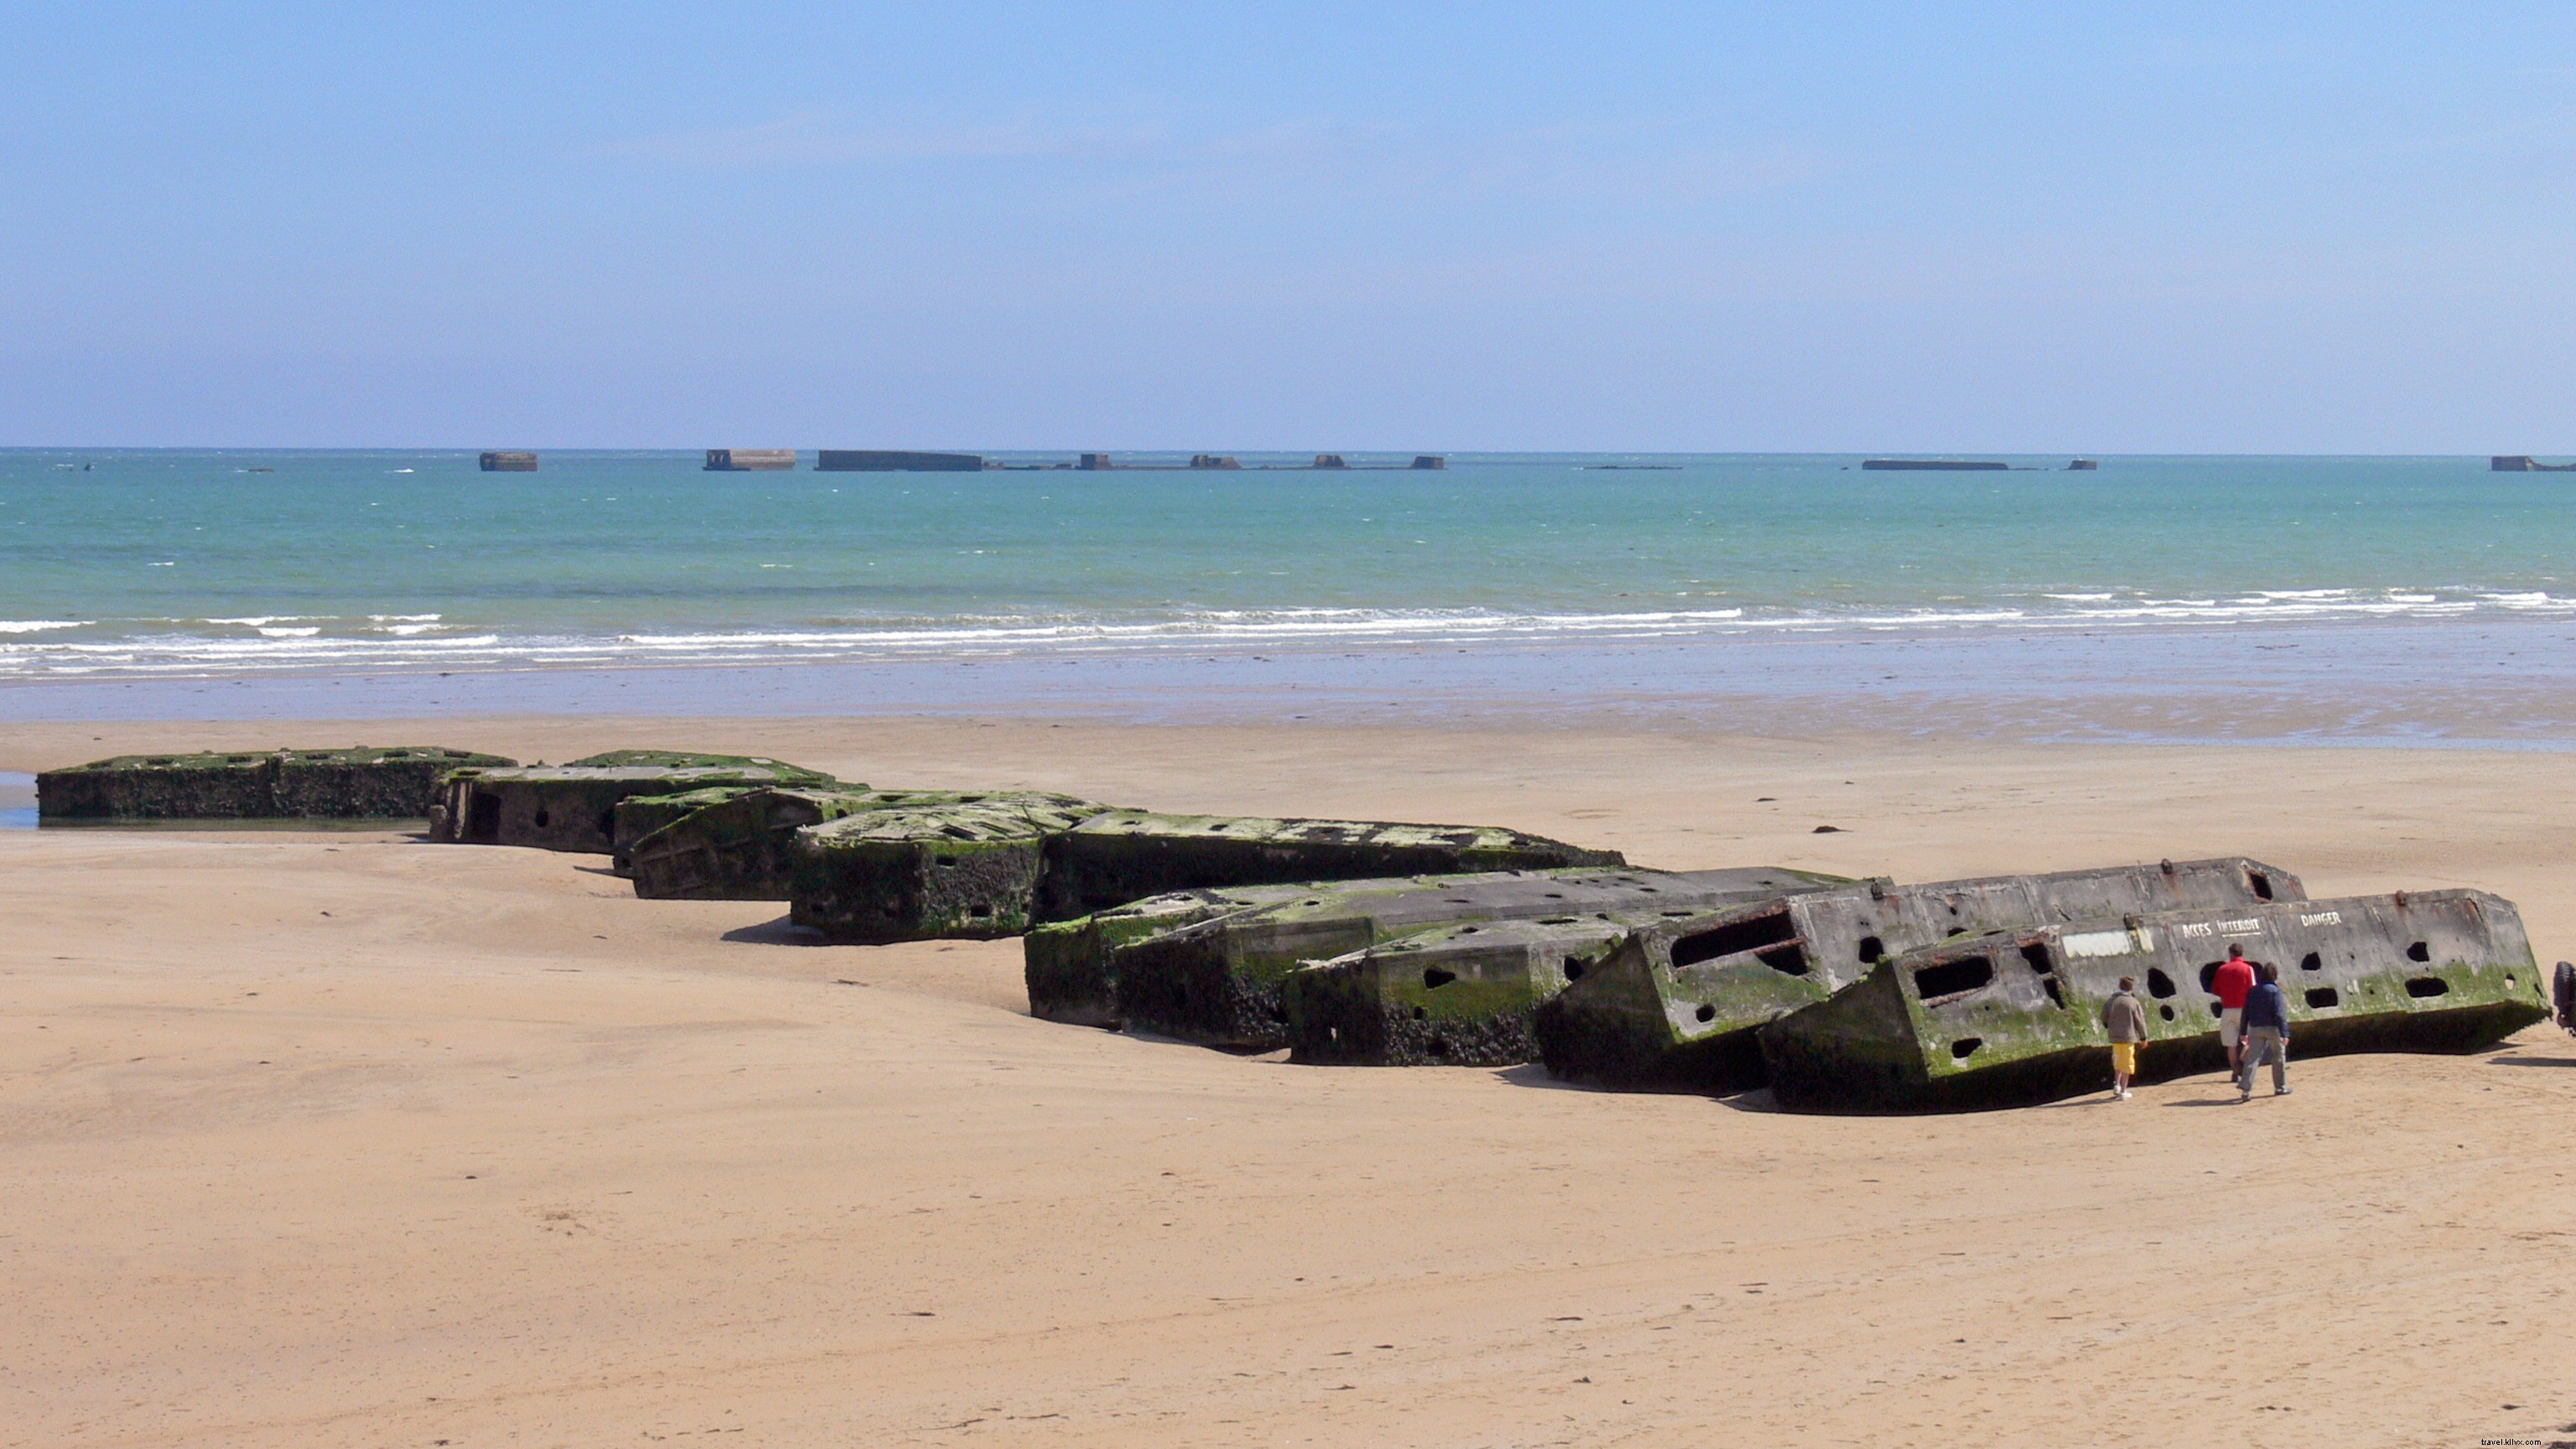 Le spiagge del D-Day in Normandia:combinazione di storia e bellezza naturale nella Francia occidentale